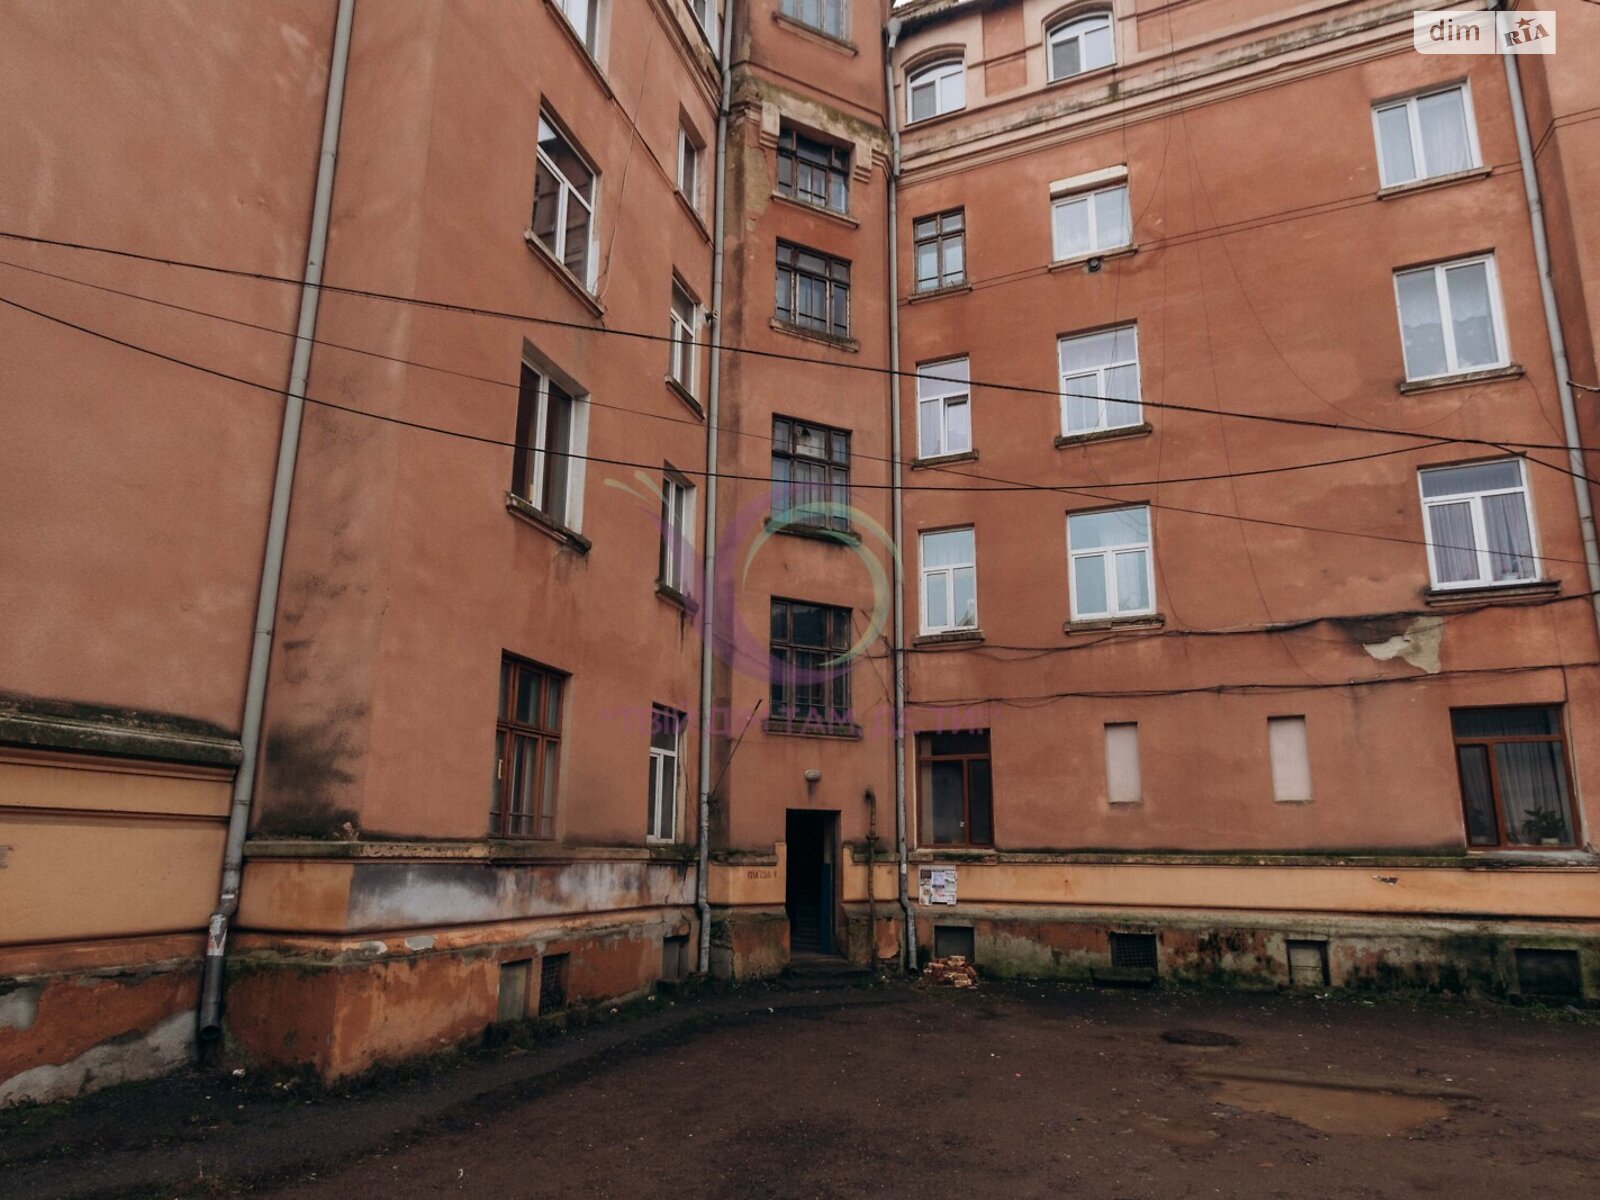 Продажа однокомнатной квартиры в Черновцах, на ул. Вокзальная, район Первомайский фото 1